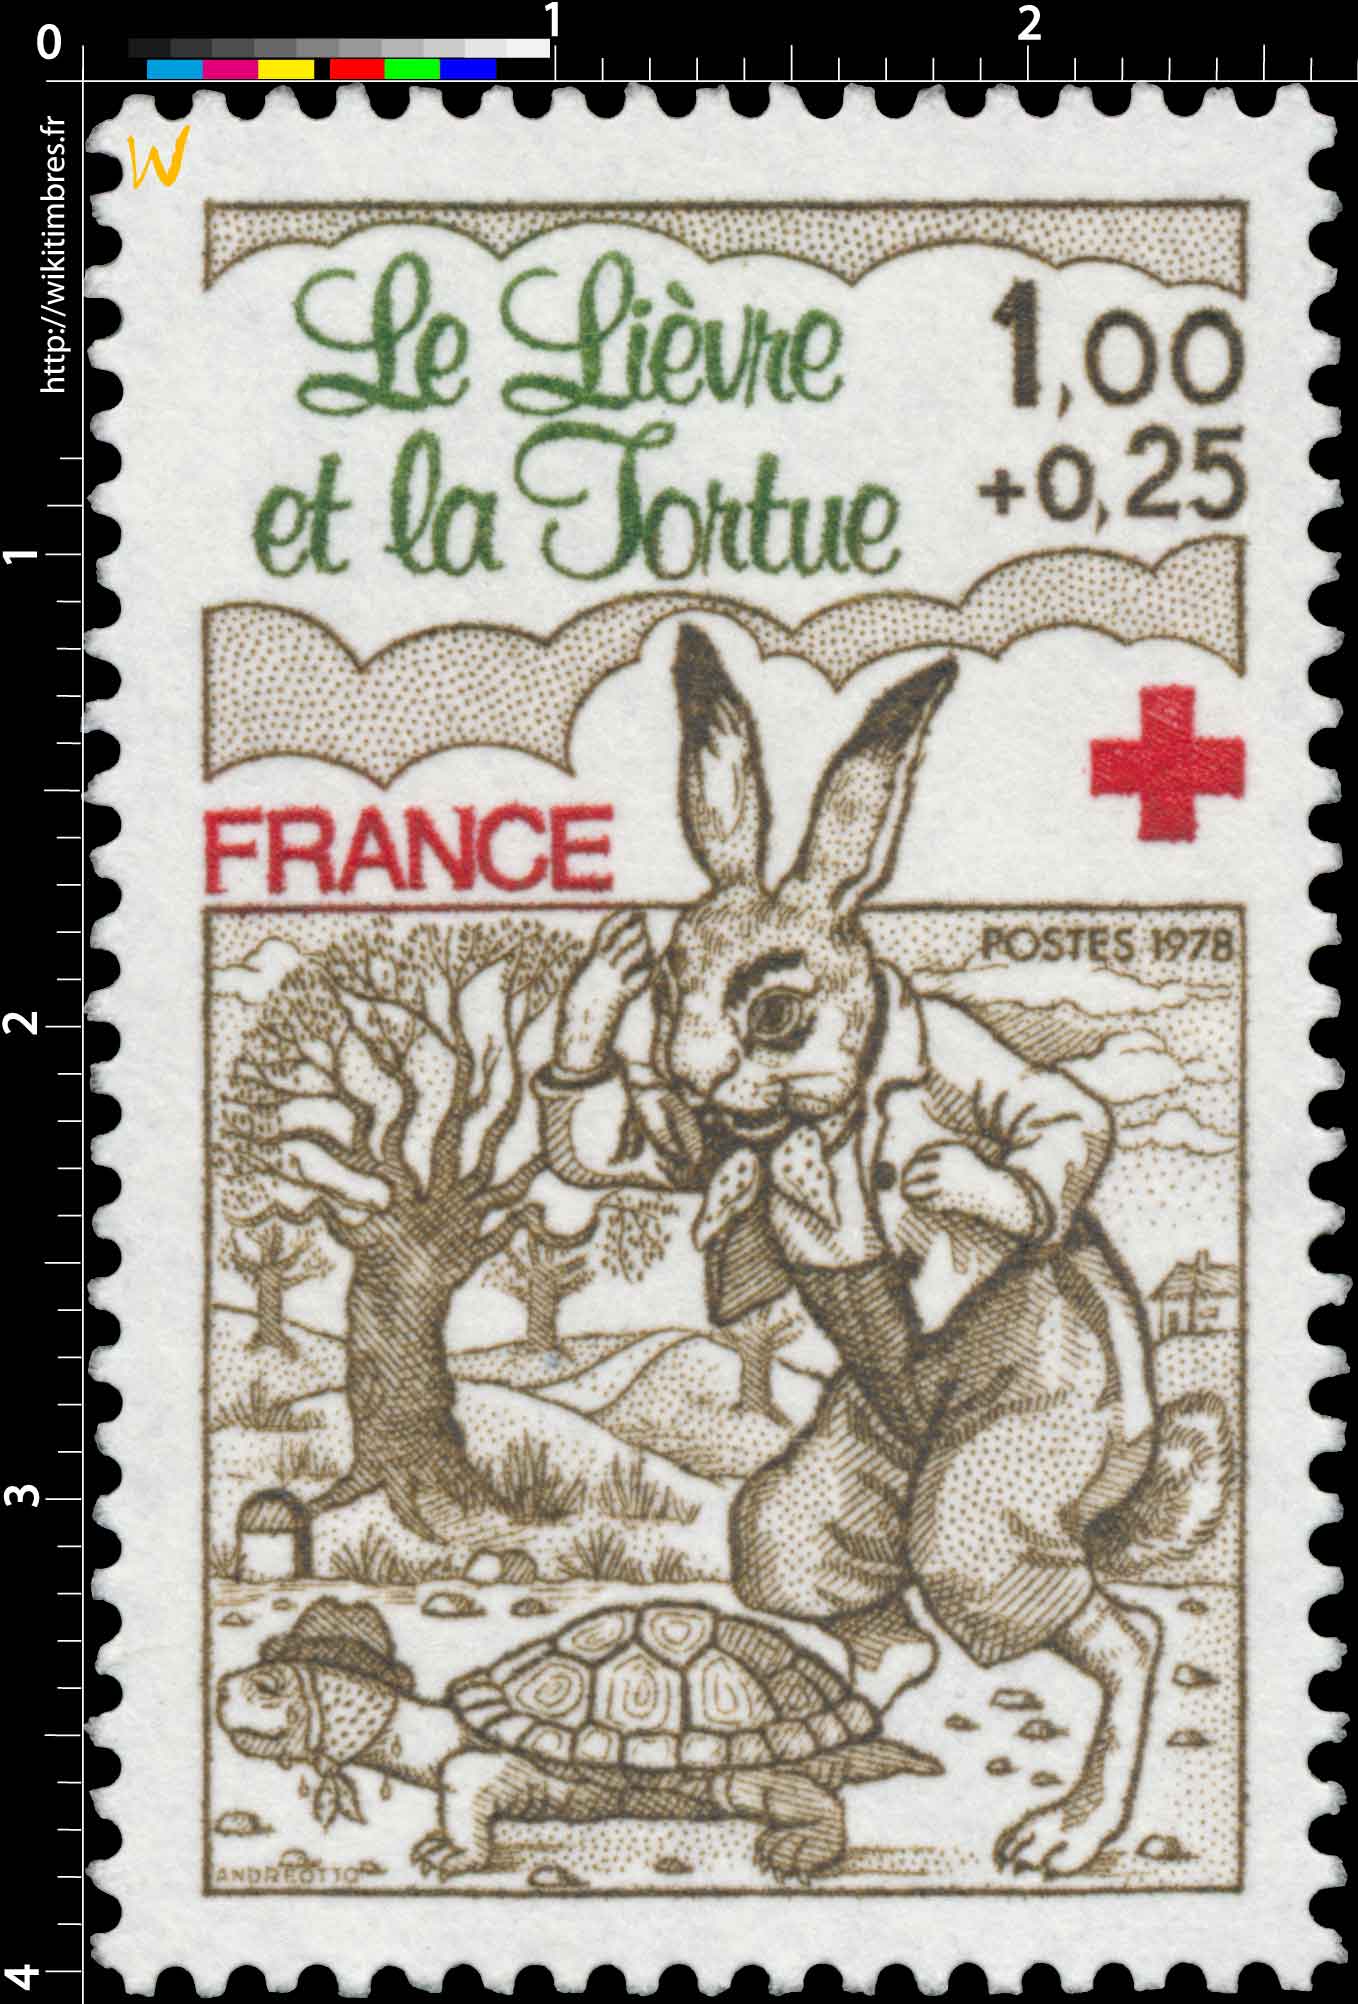 1978 Le Lièvre et la Tortue